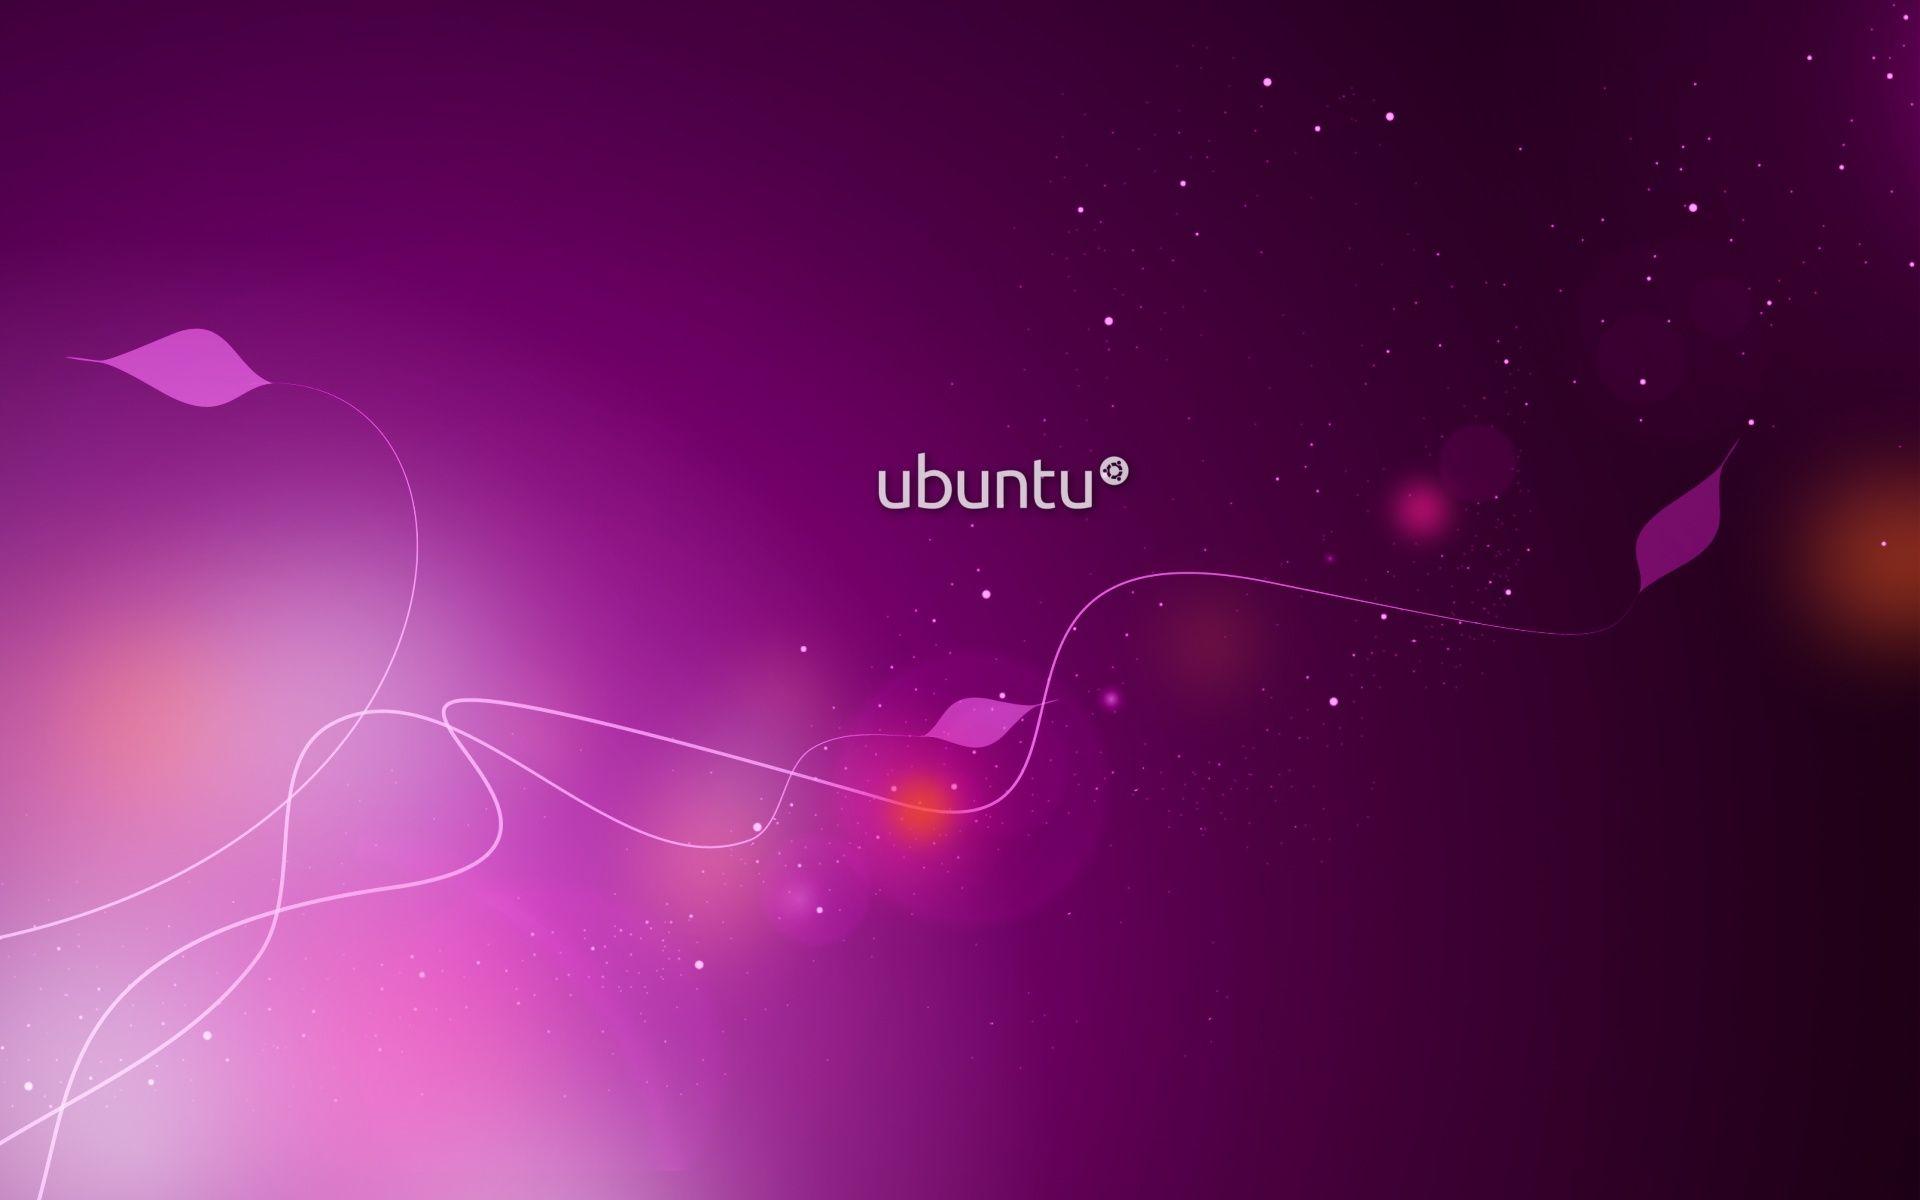 Ubuntu Wallpapers Hd Wallpapers - Best Wallpaper For Ubuntu - HD Wallpaper 